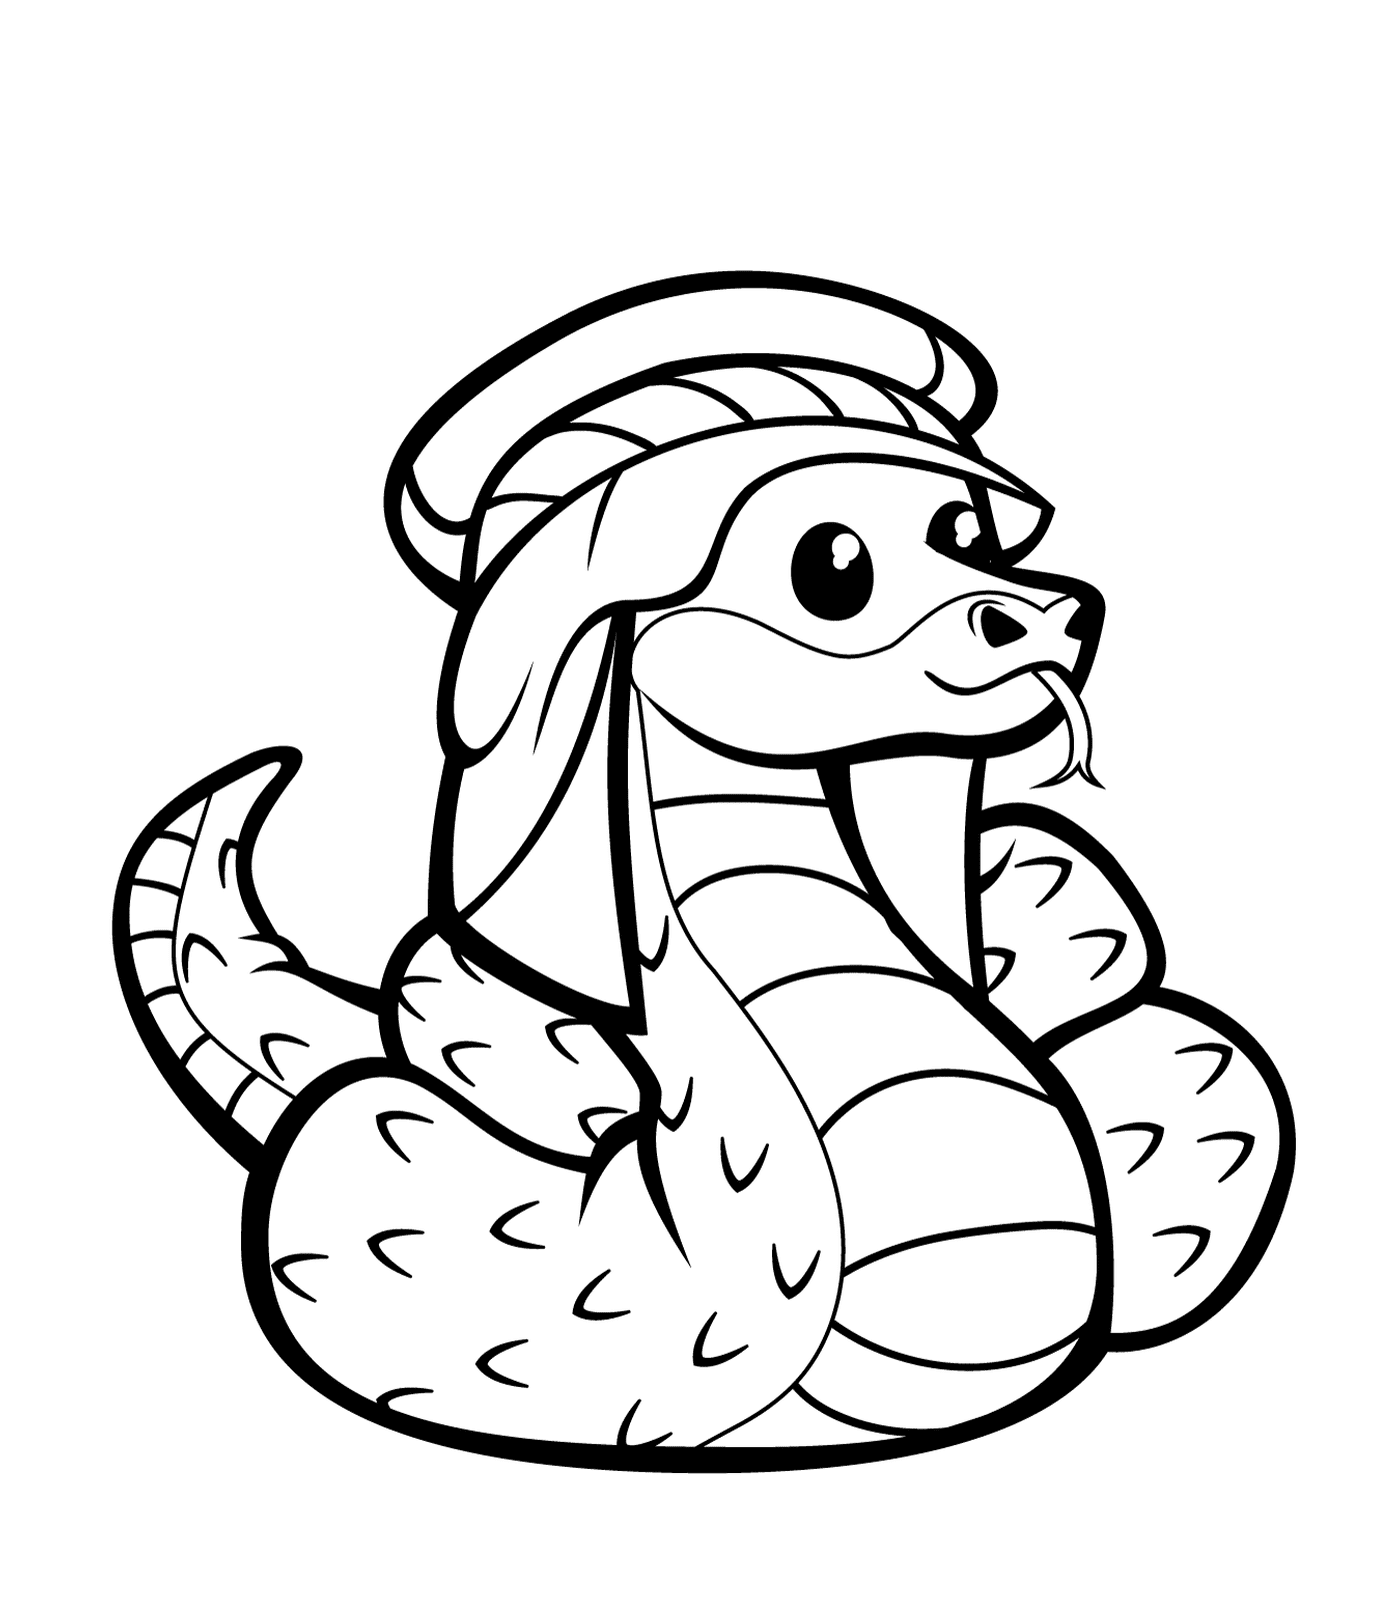  Una serpiente con sombrero 